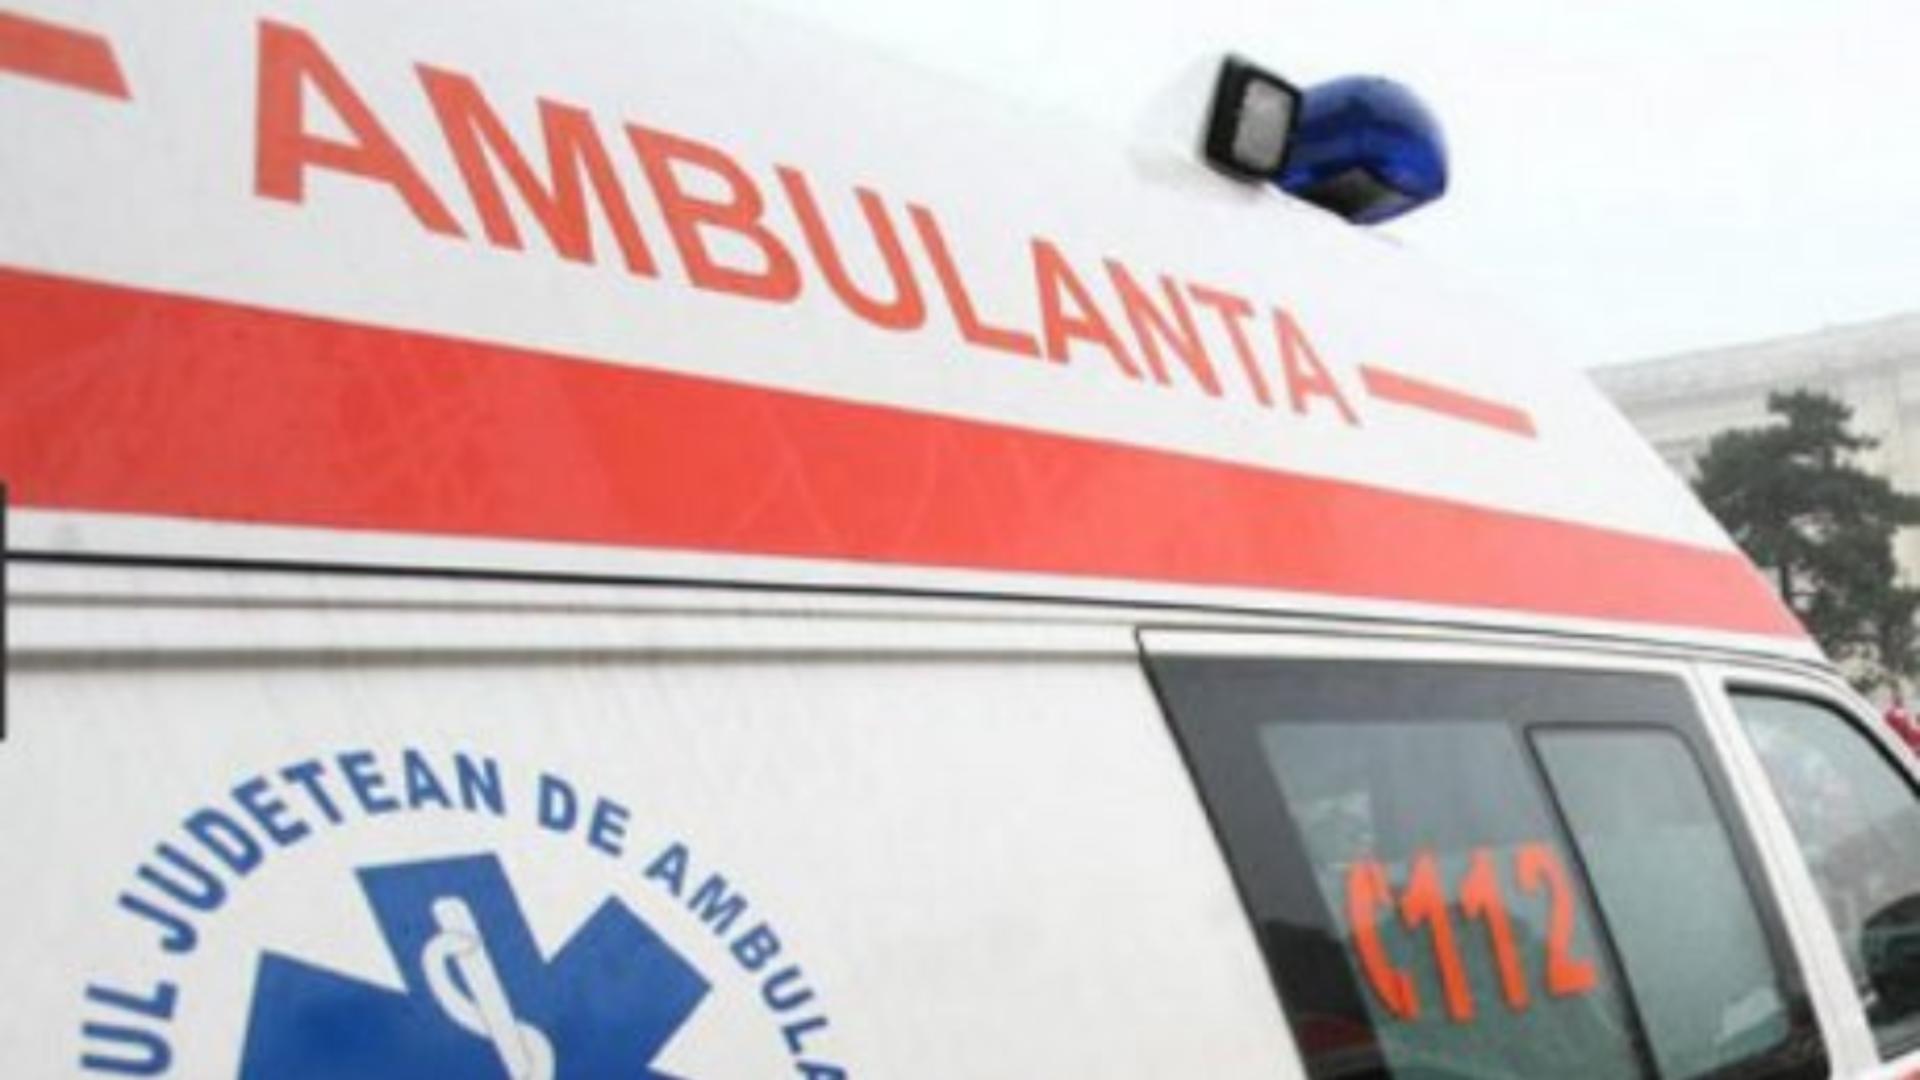 Bărbat rănit după ce a căzut cu mașina de pe un pod din Cluj. Au intervenit echipajele de descarcerare